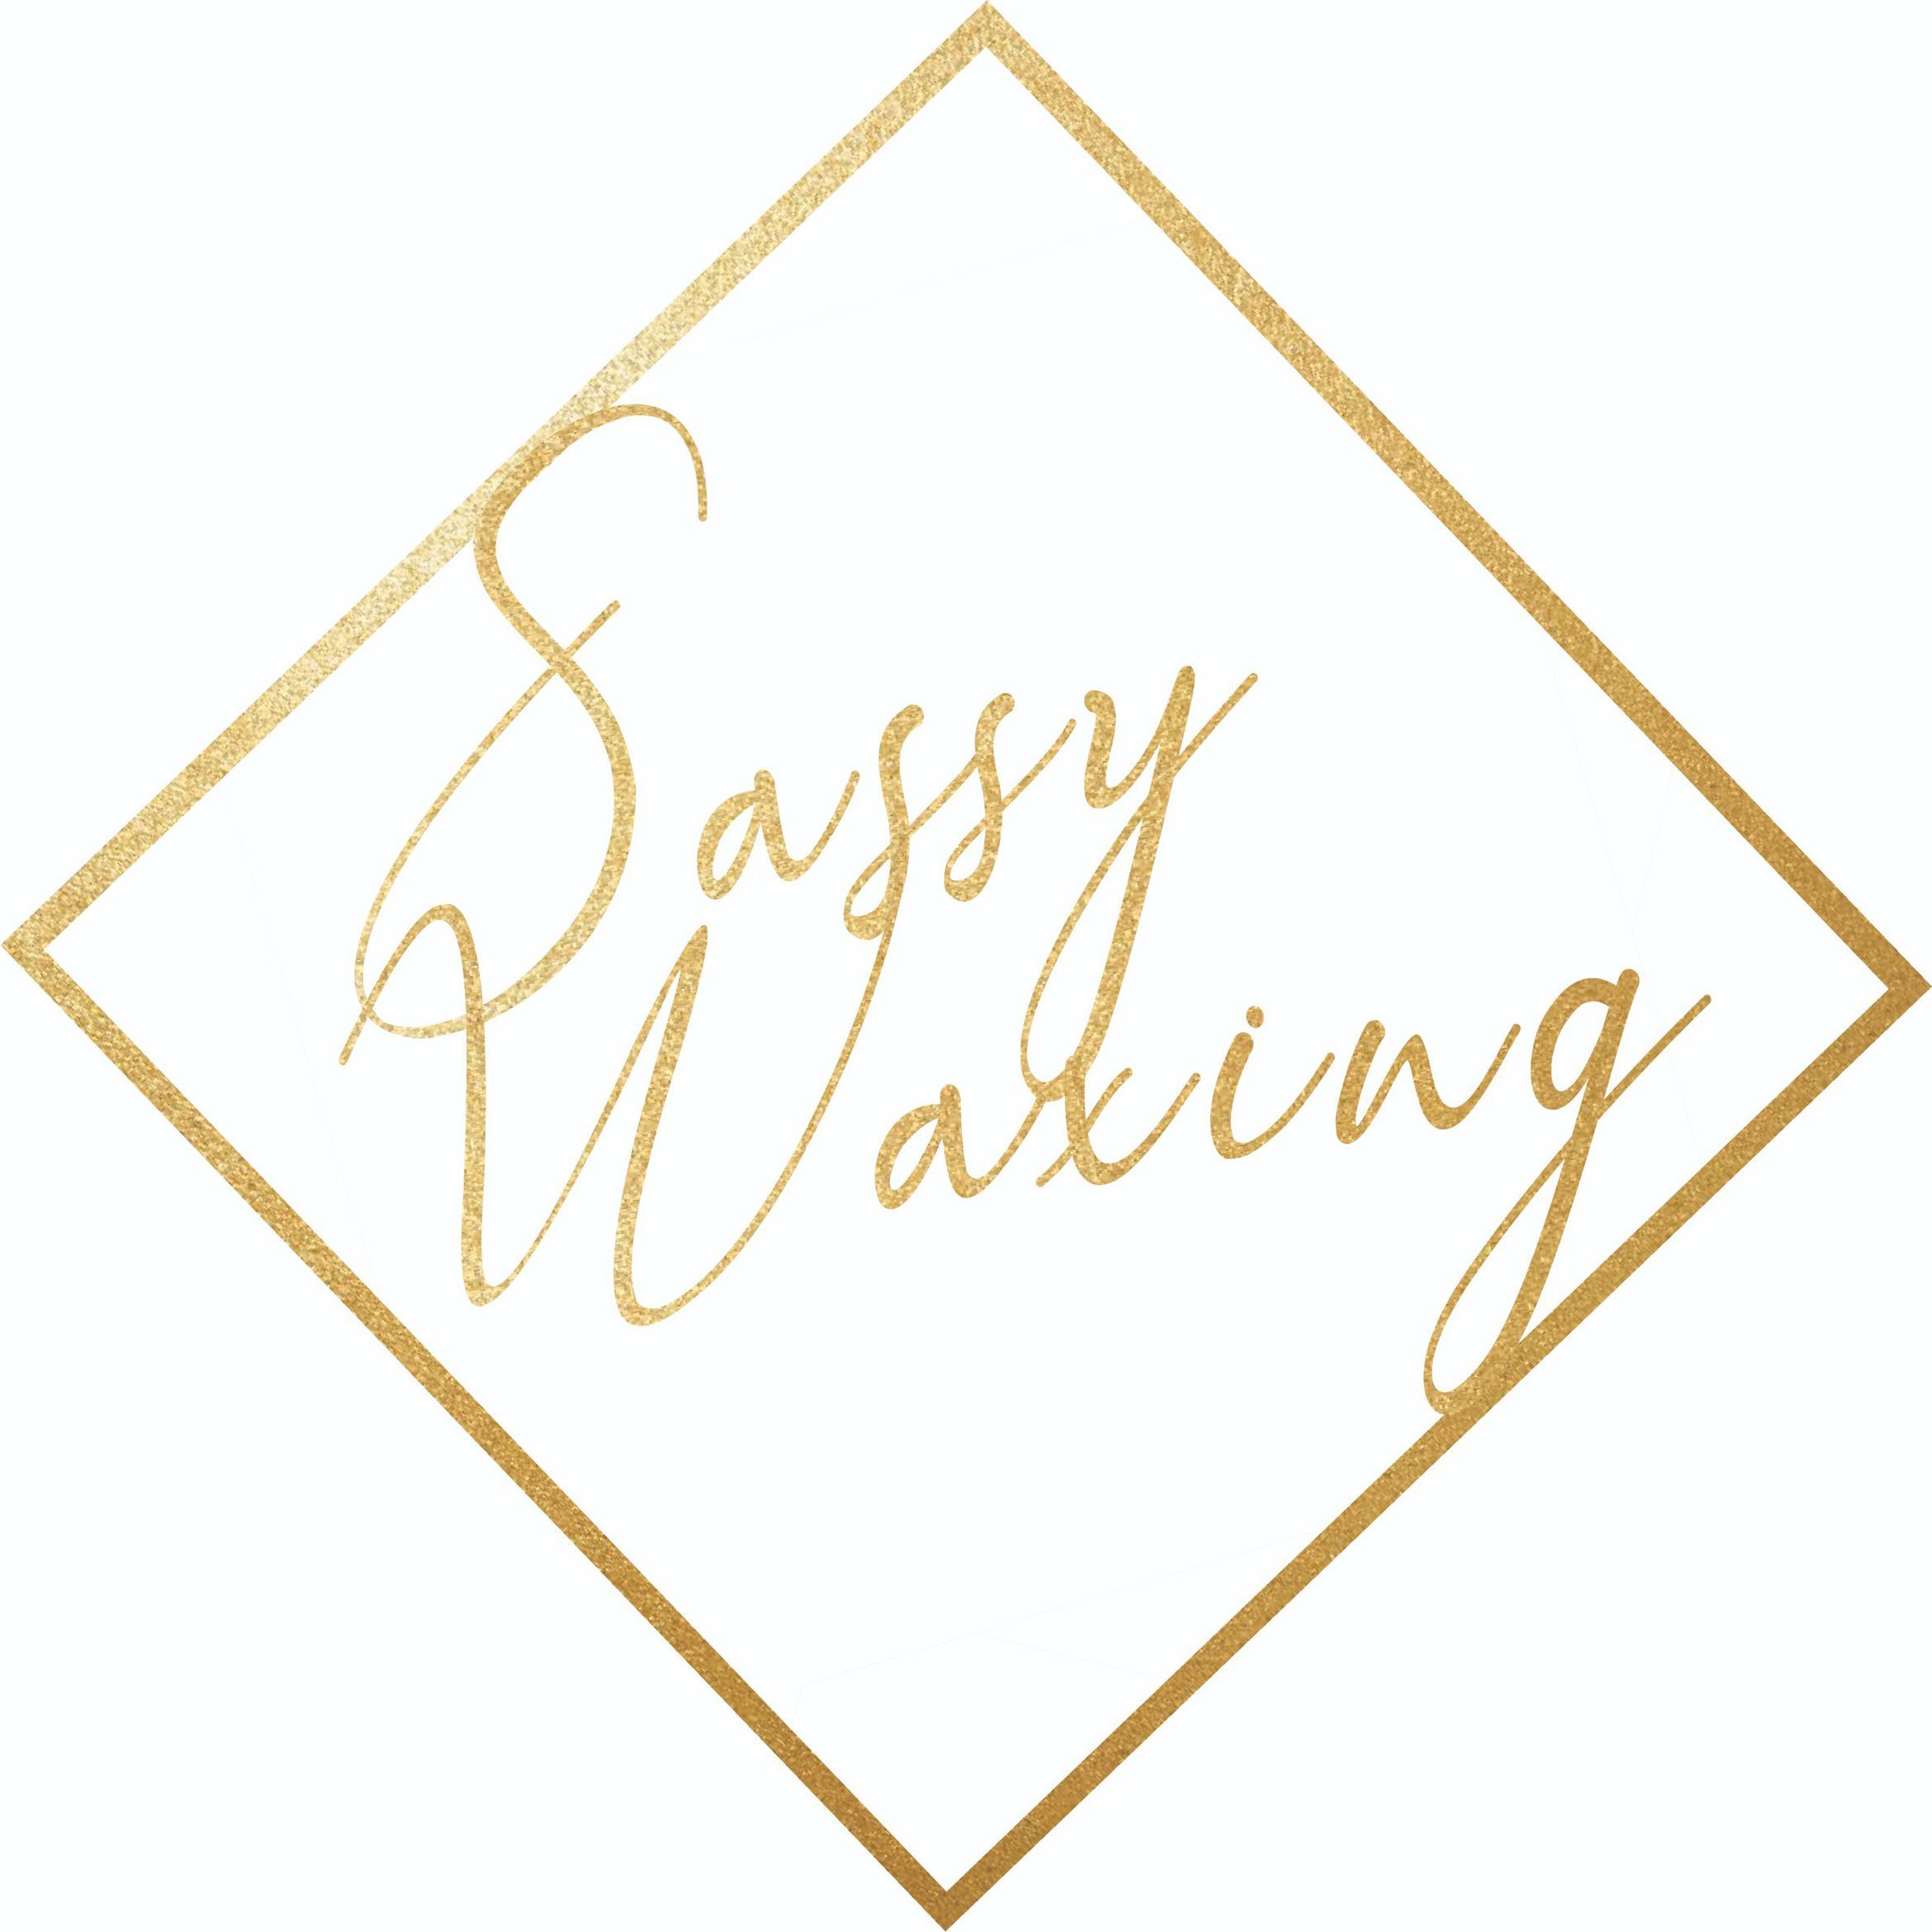 Sassy Waxing, Kylross Avenue, Bristol